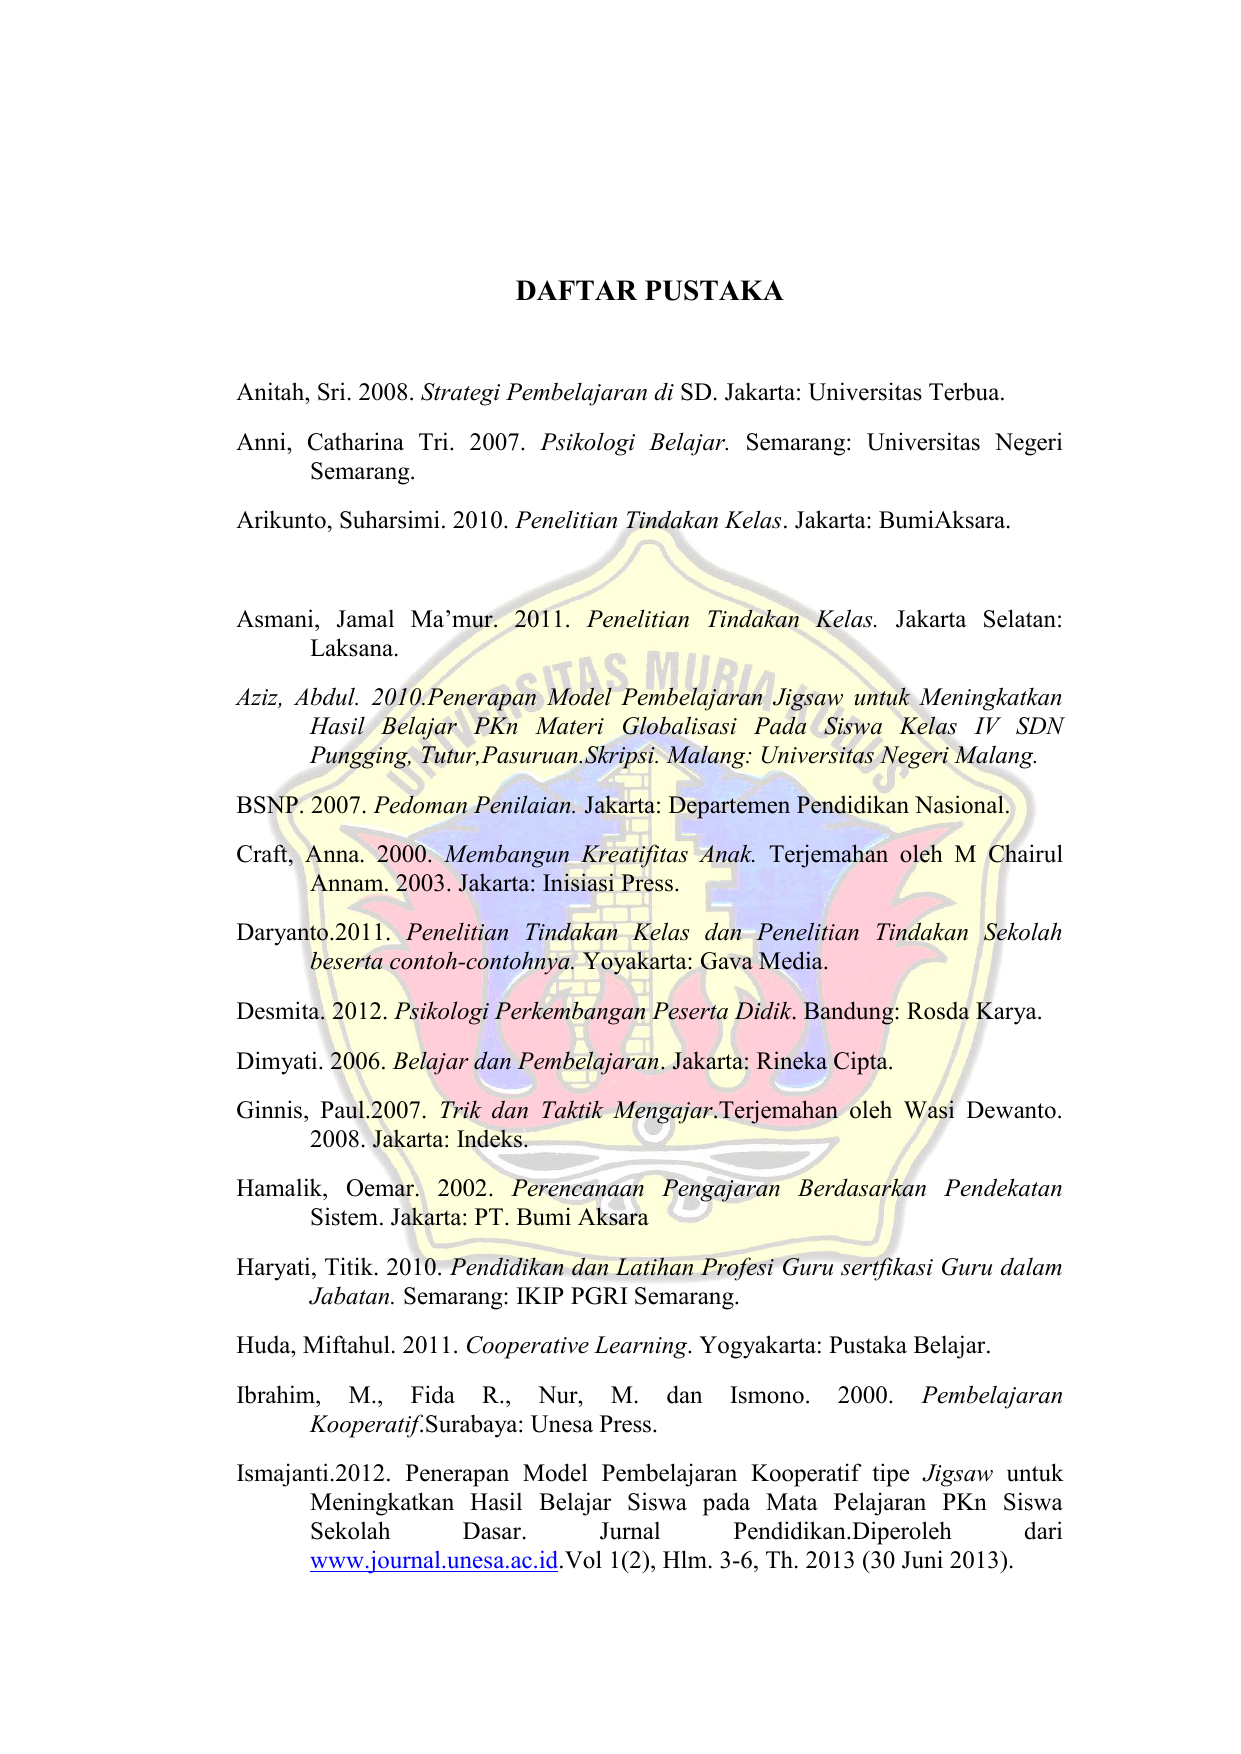 2007 Psikologi Belajar Semarang Universitas Negeri Semarang Arikunto Suharsimi 2010 Penelitian Tindakan Kelas Jakarta BumiAksara